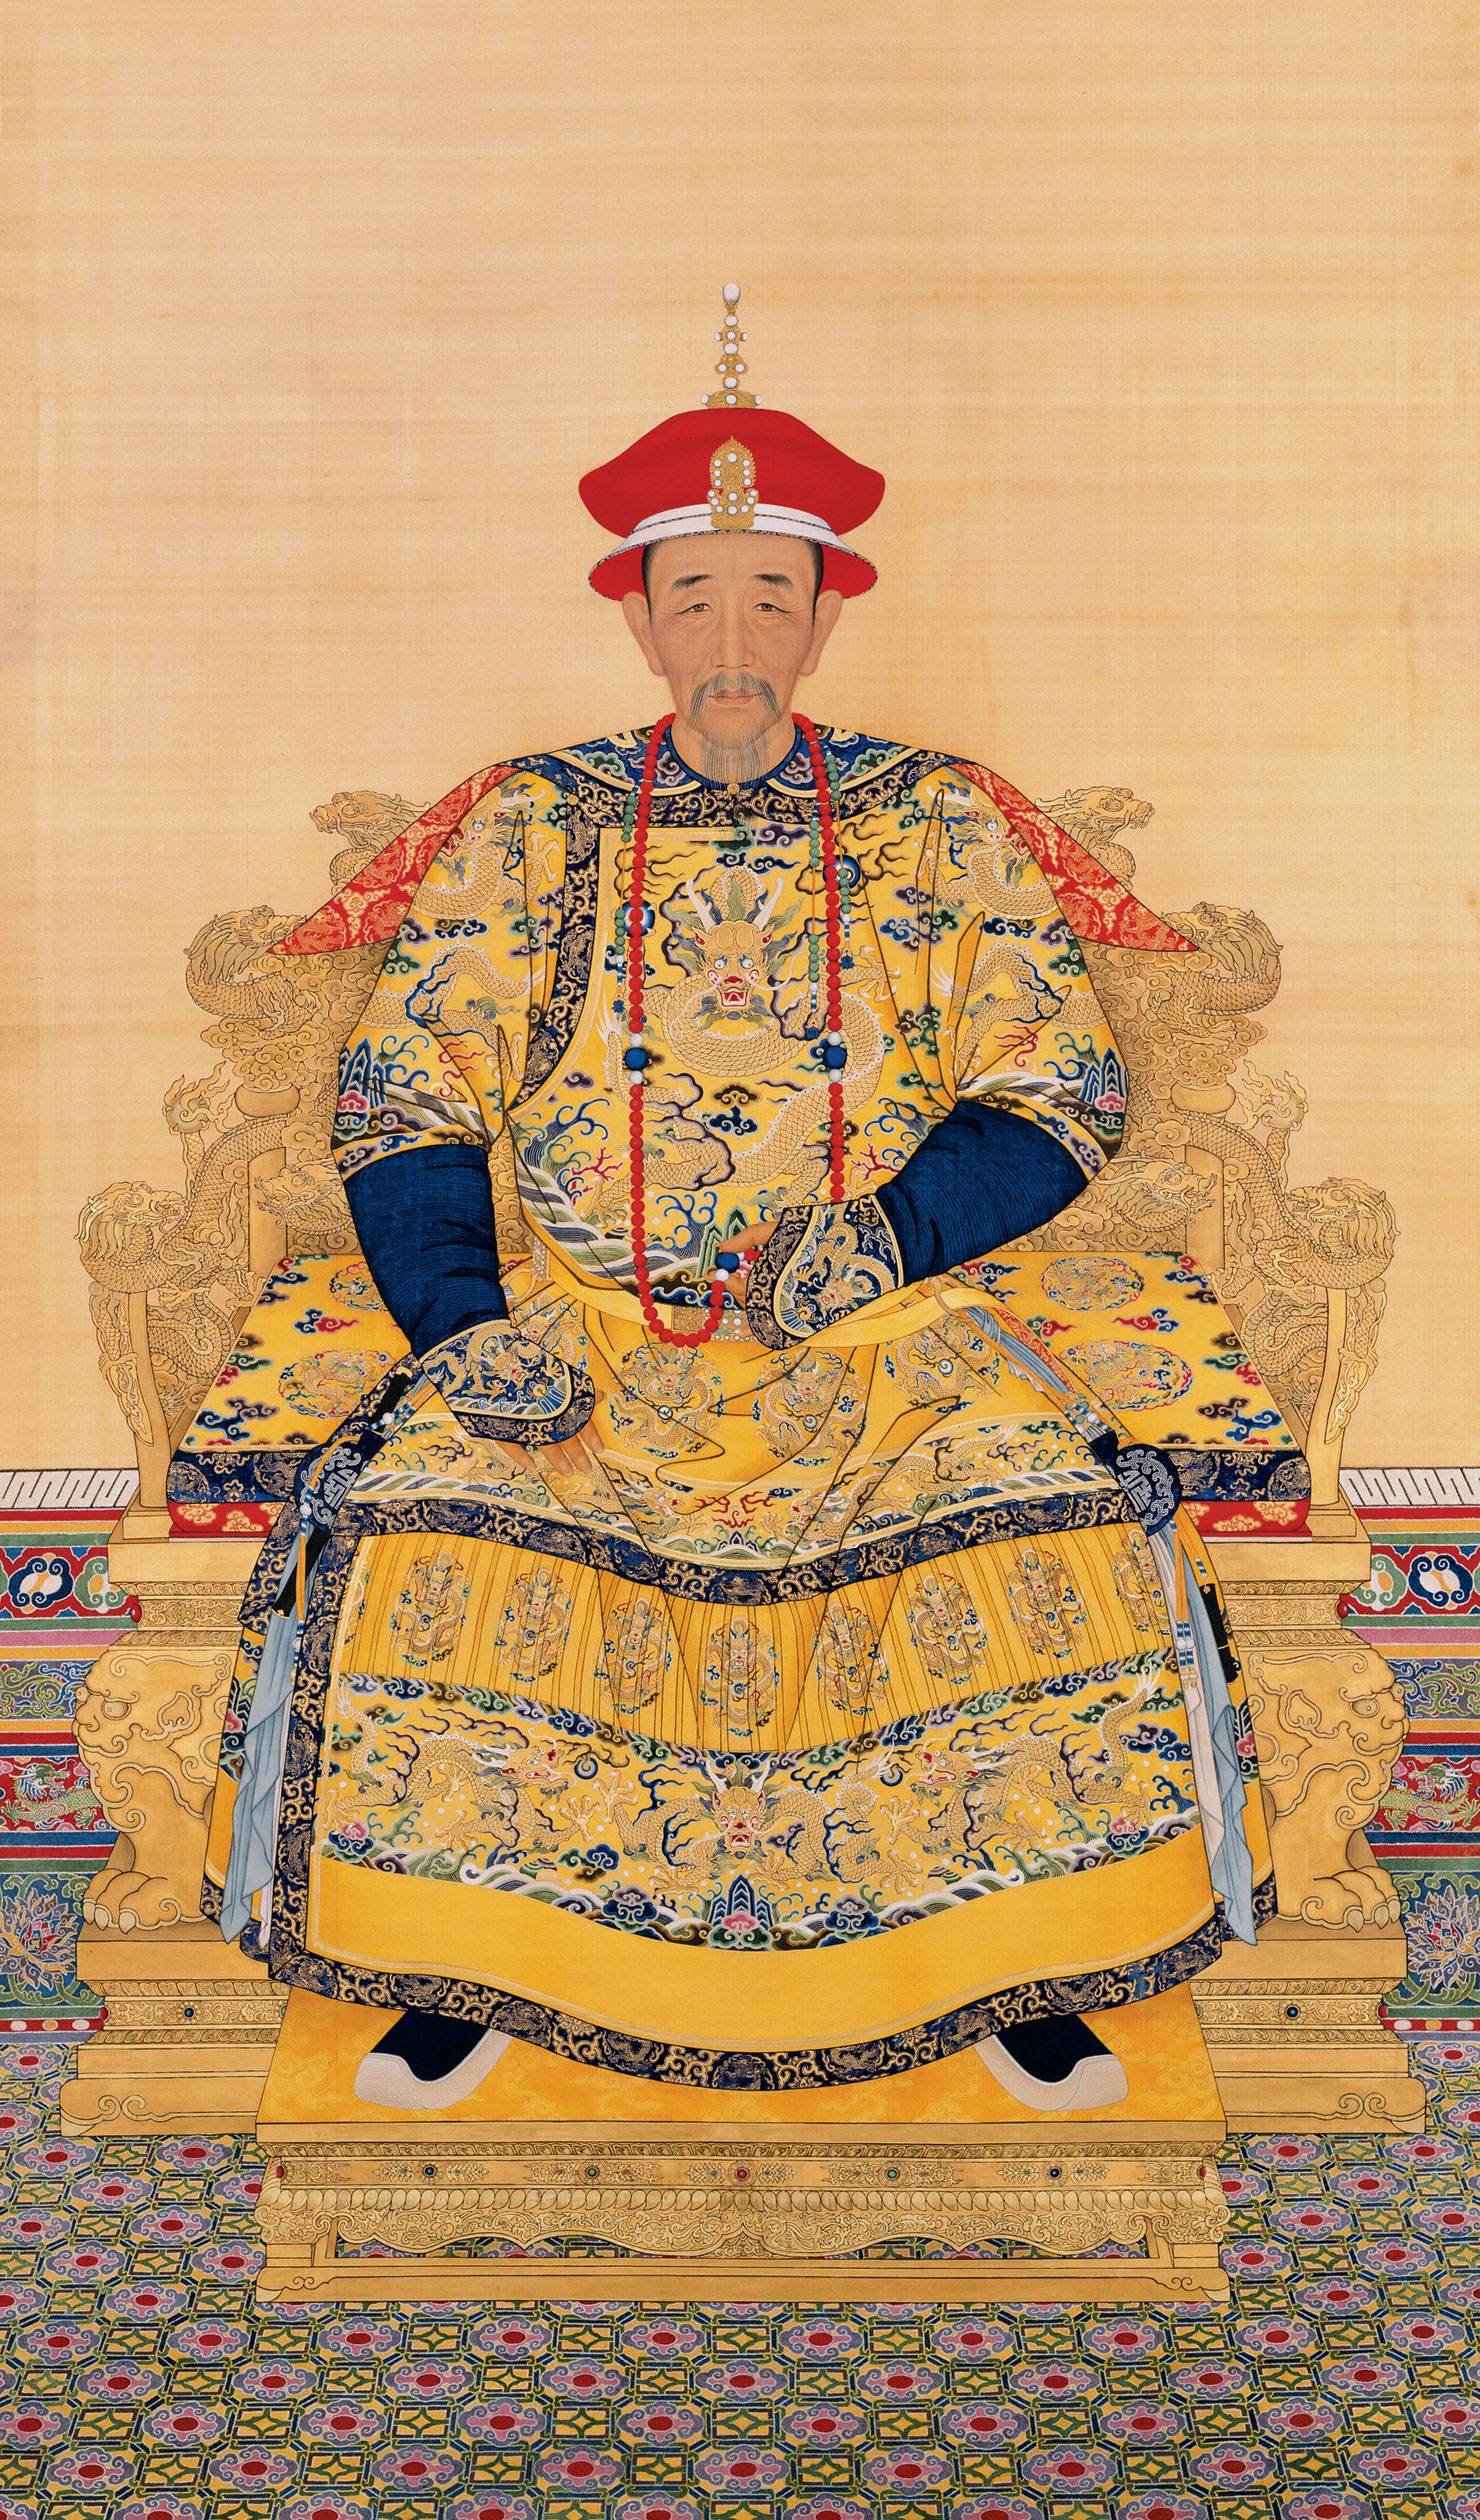 唐宋元明清具代表性的皇帝,每位都功绩斐然,影响深远